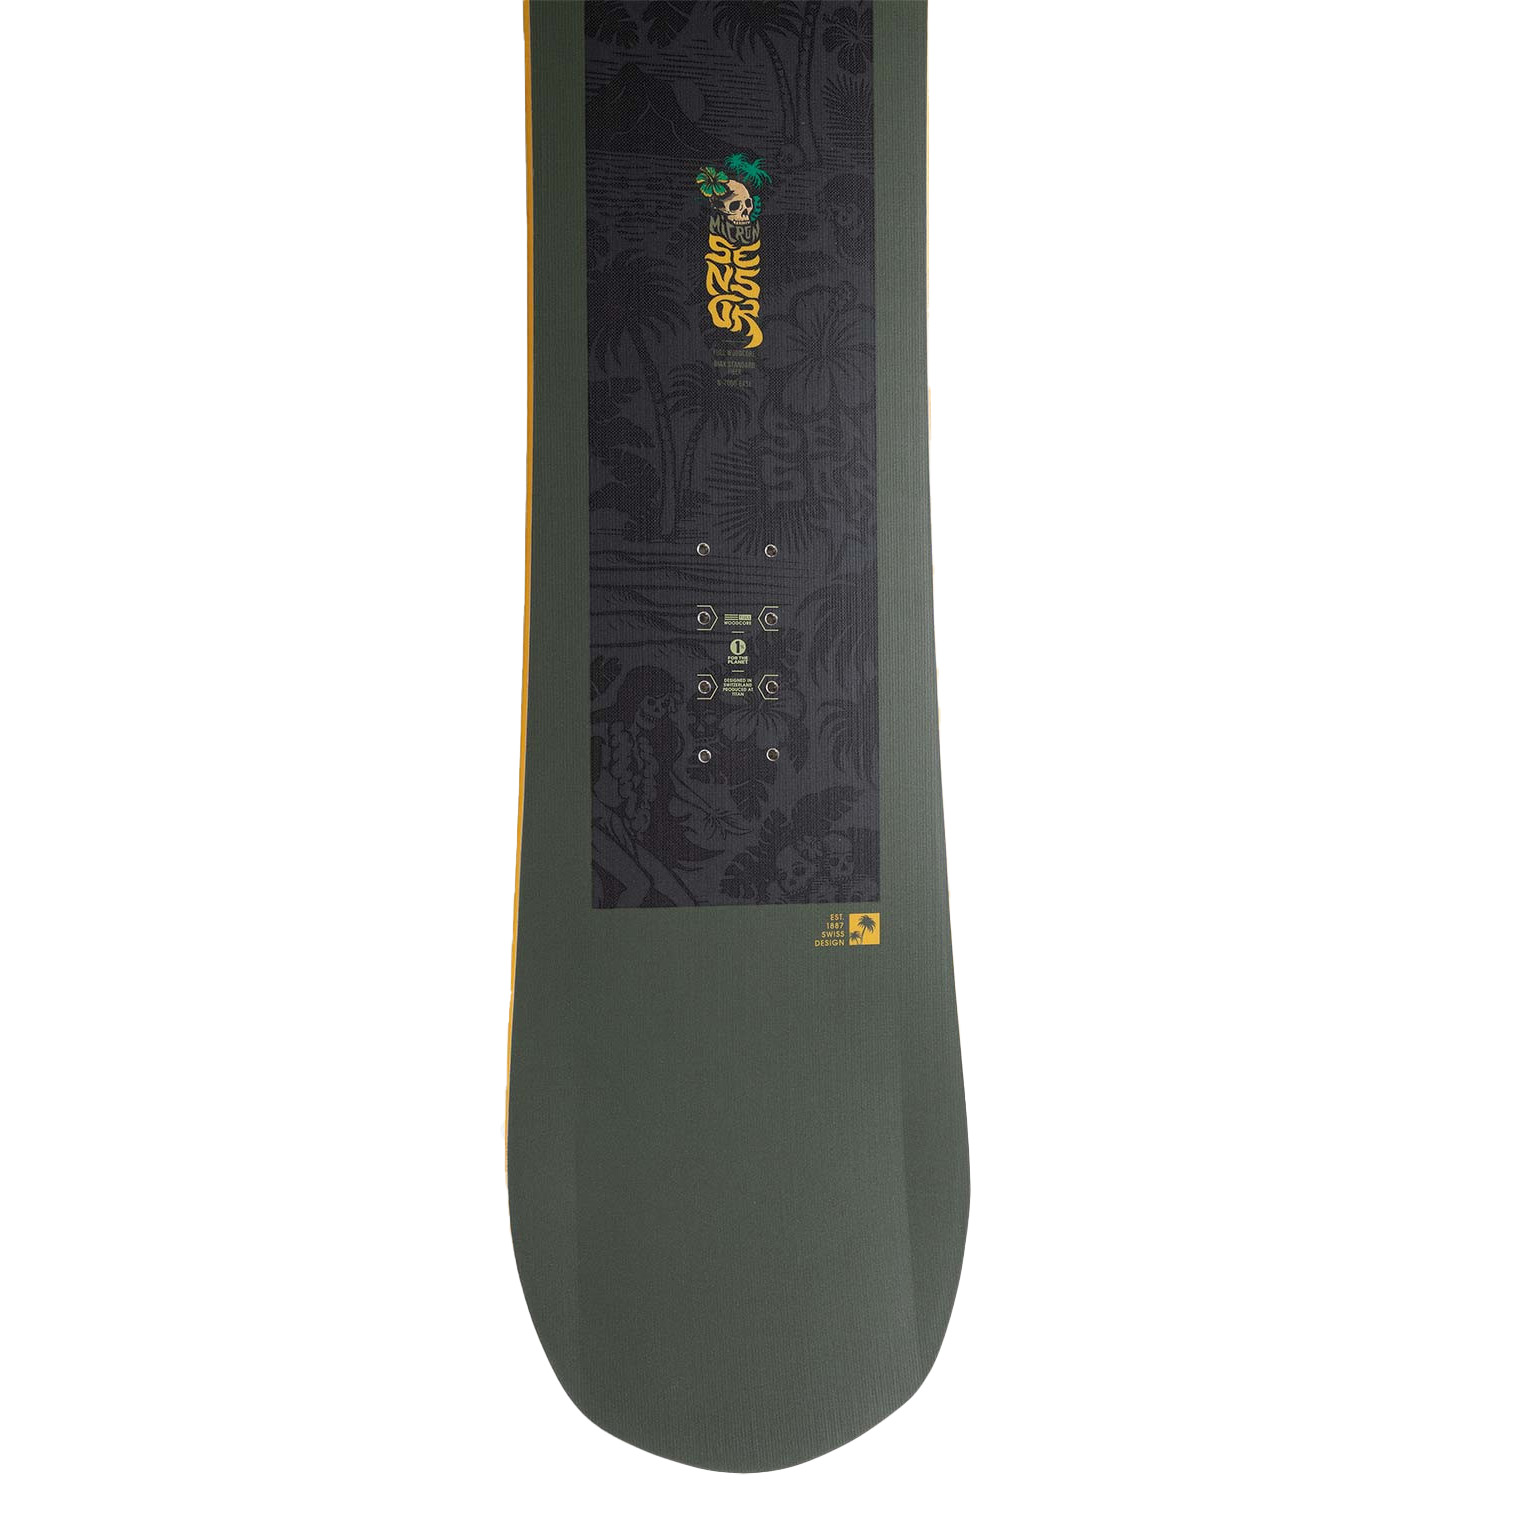 Nidecker Micron Sensor All Mountain/Freestyle Snowboard